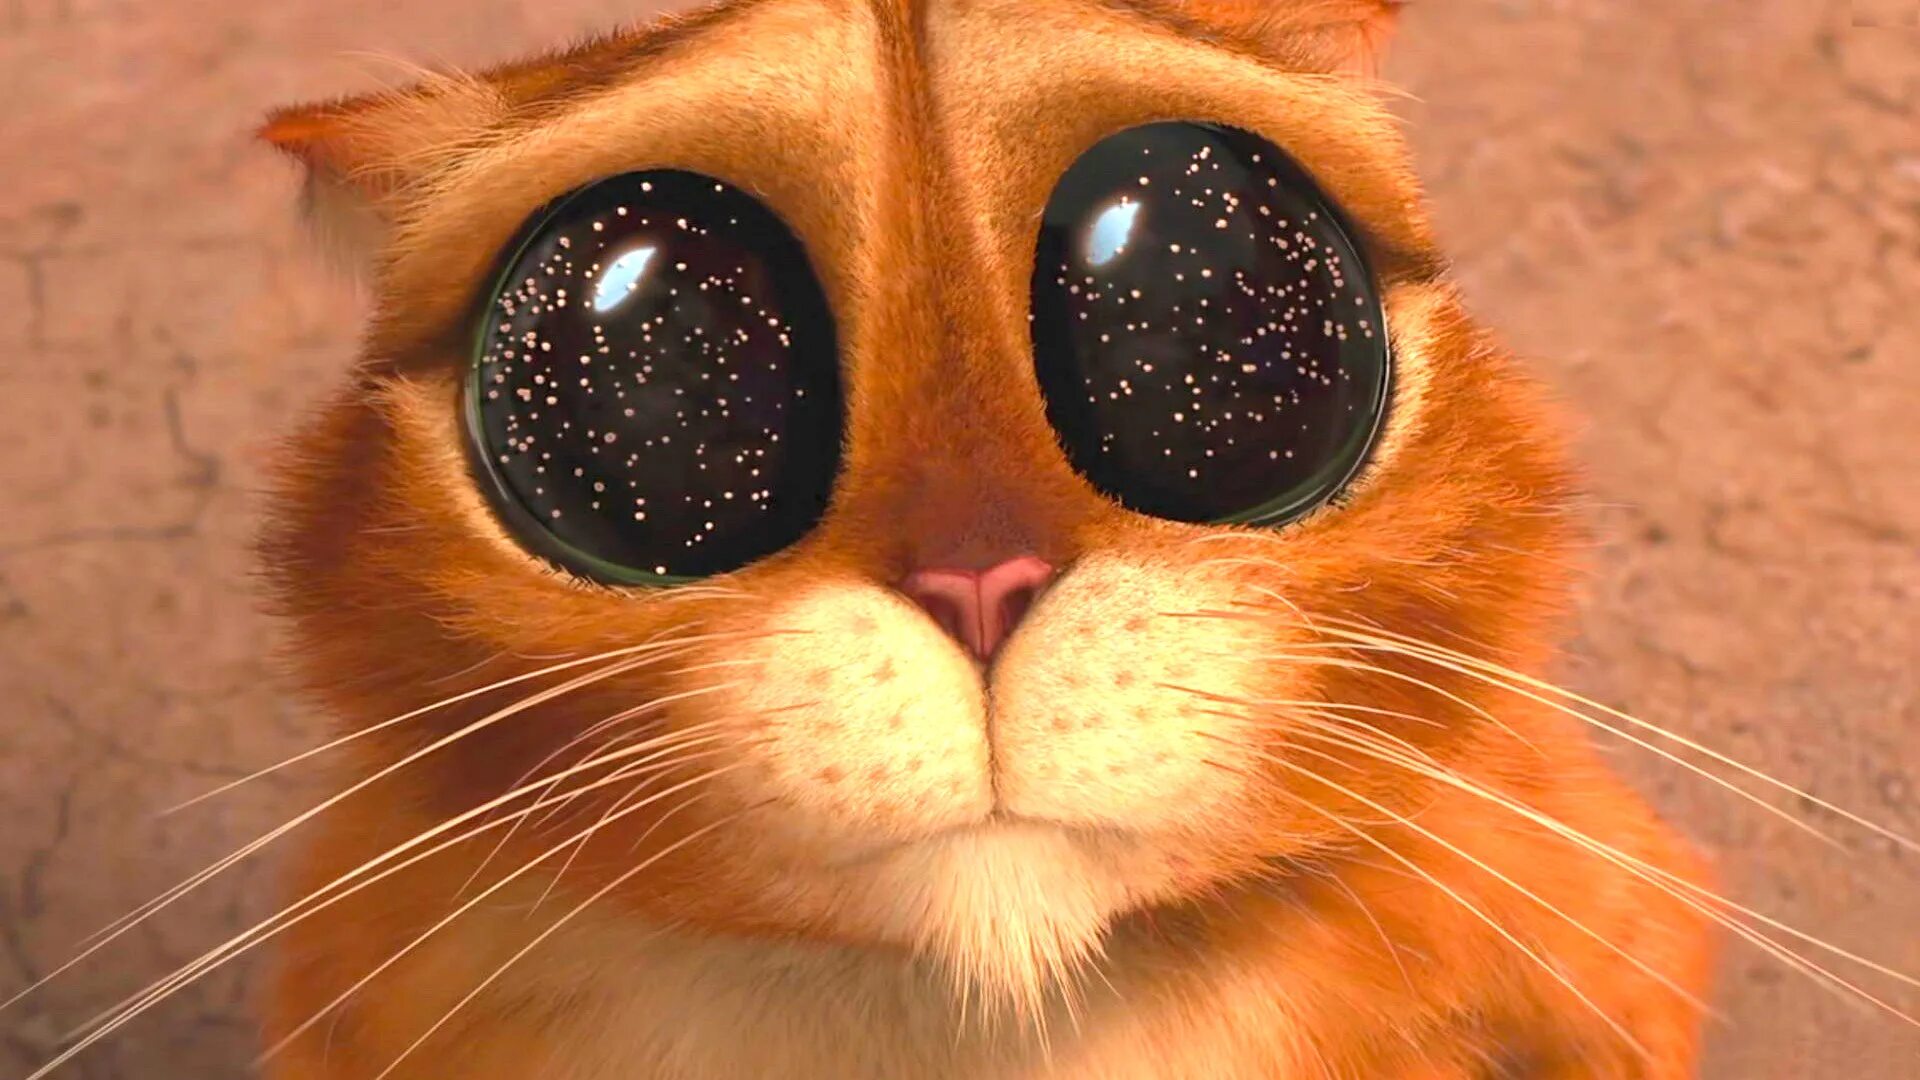 Ну шейка глазки. Кот из Шрека. Милые глазки. Глазки кота из Шрека. Кот в сапогах глаза космос.